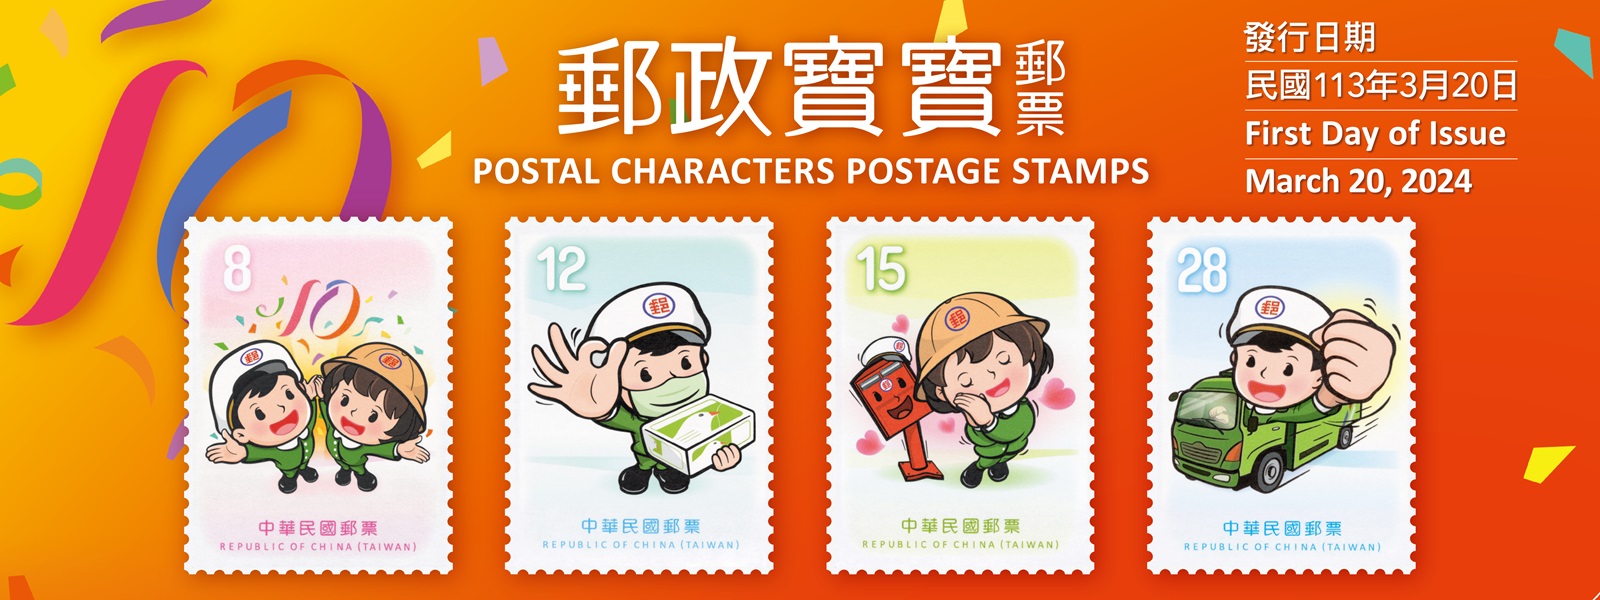 中華郵政自103年起推出郵政寶寶系列貼圖，於113年邁入10週年，本公司特發行郵票1套4枚，面值分別為8元、12元、15元及28元。